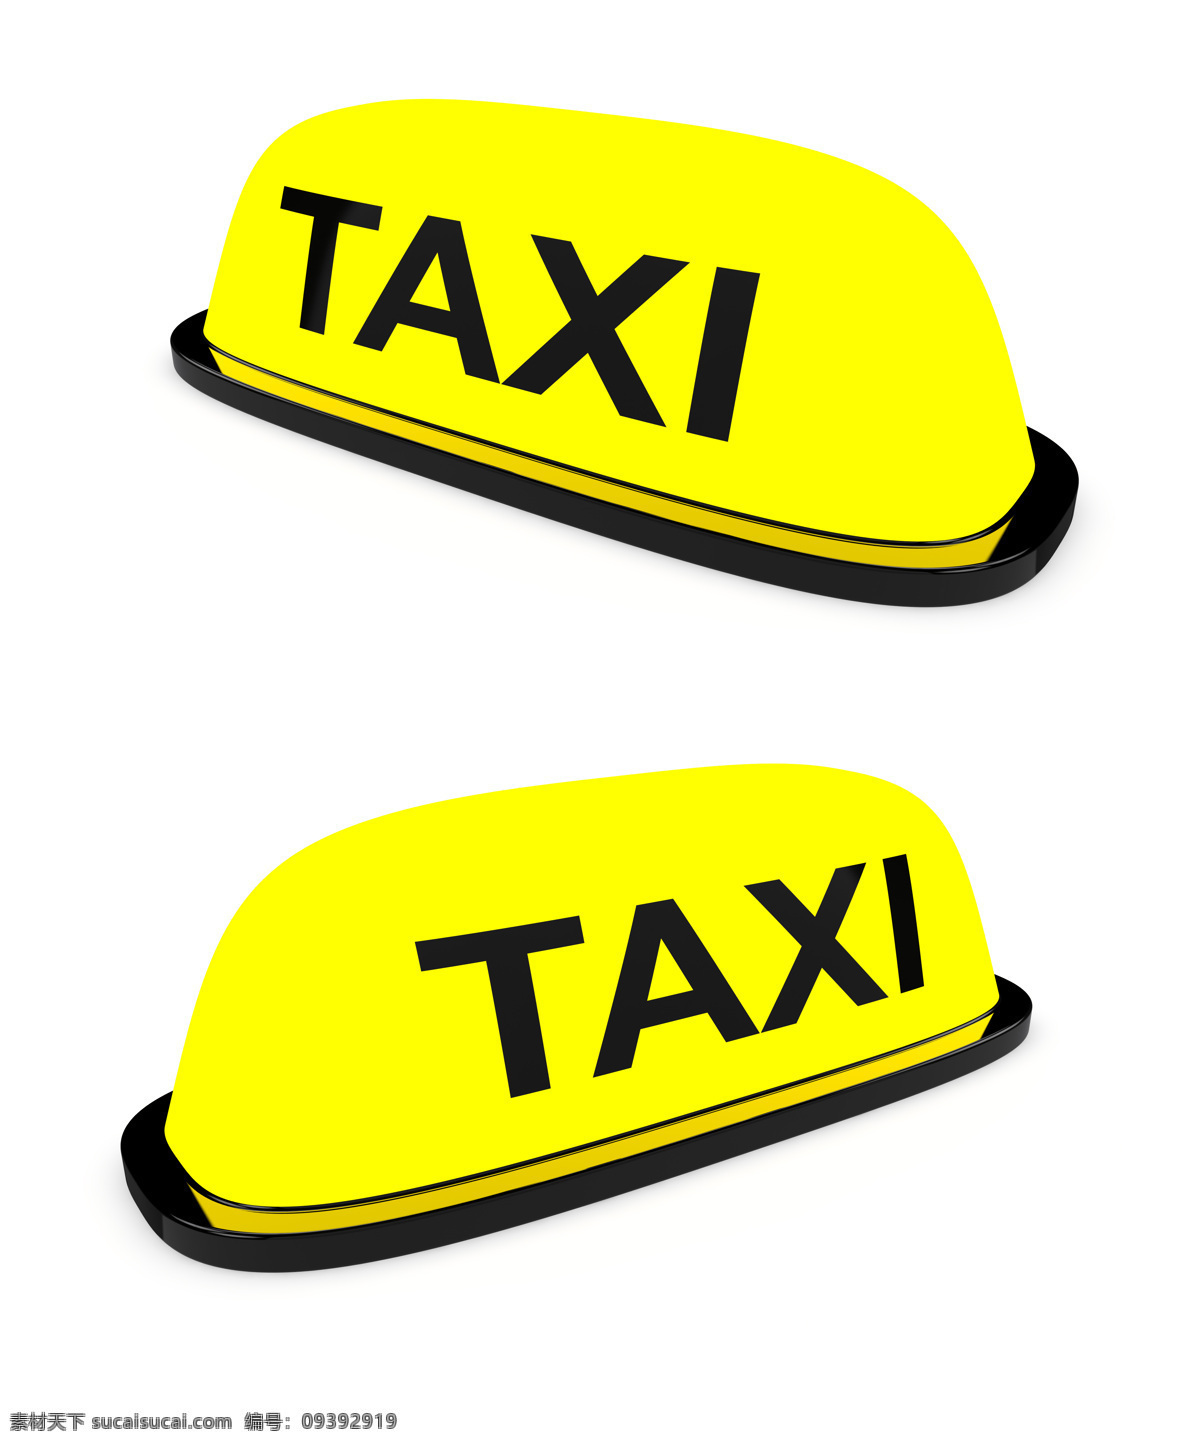 的士 车牌 的士车 出租车 计程车 汽车图片 现代科技